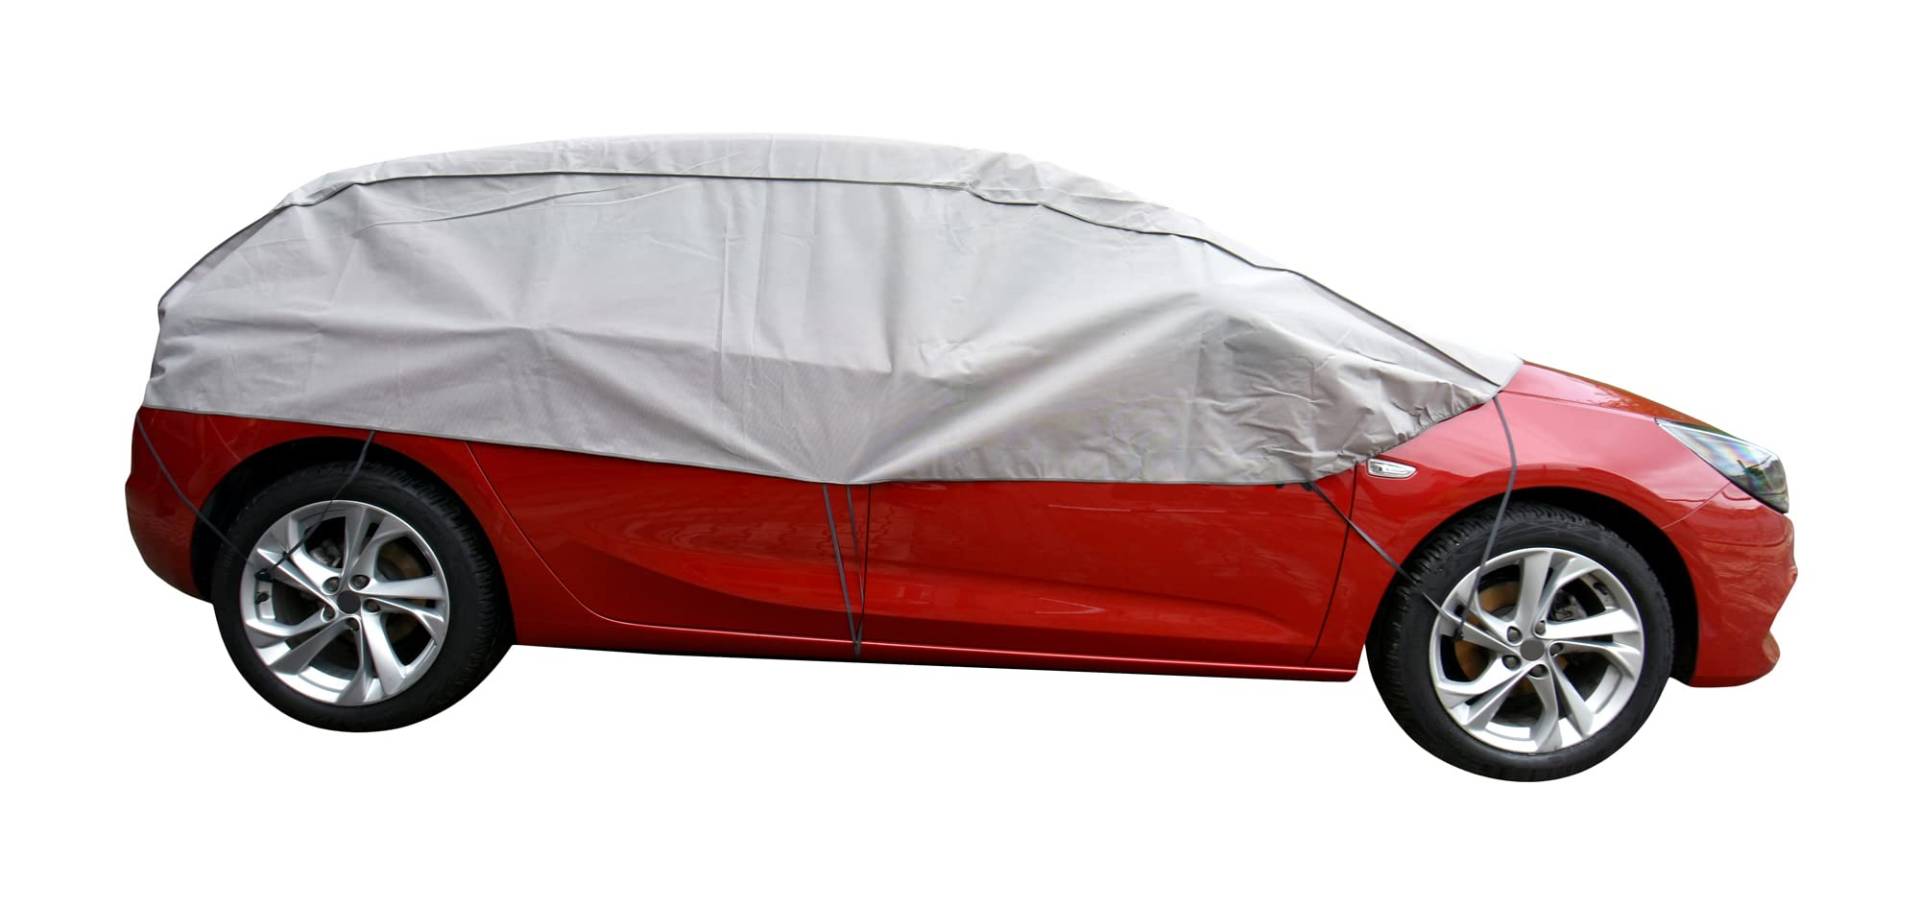 Scheibenschutz Halbgarage für Winter Sommer Herbst kompatibel mit Audi A3 - Autoabdeckung Kleinwagen grau Aussen und Ihnnen Bereich von Z4L